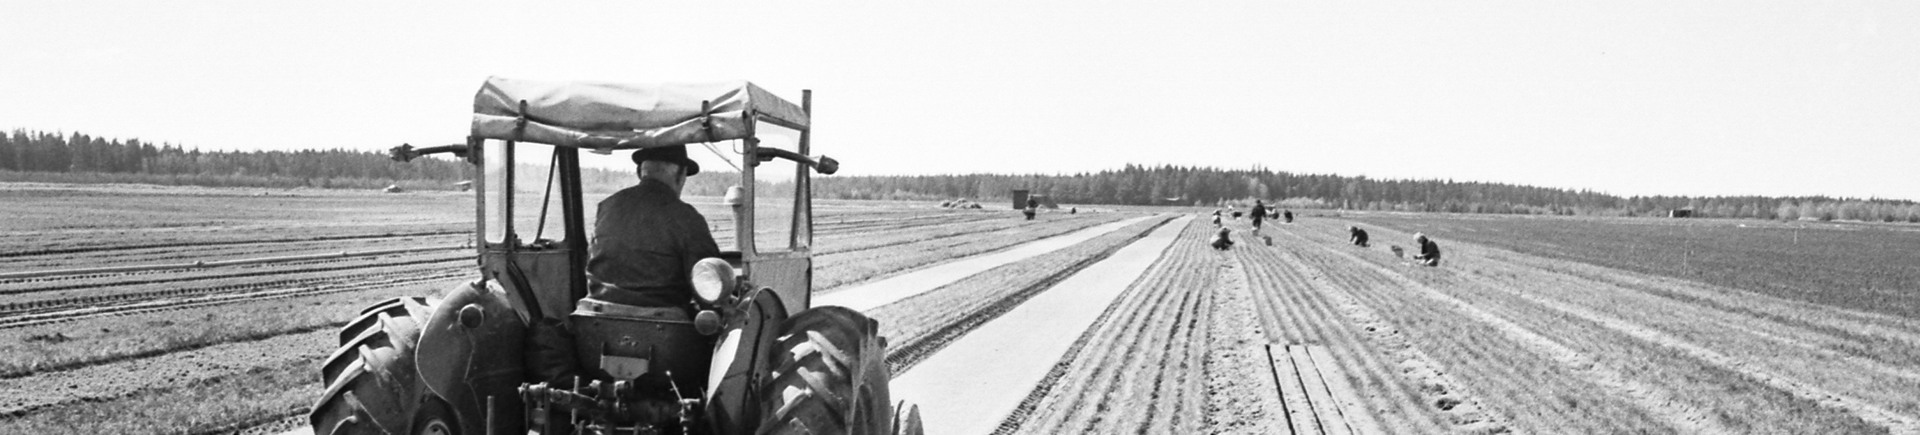 En traktor plogar fåror i en åker